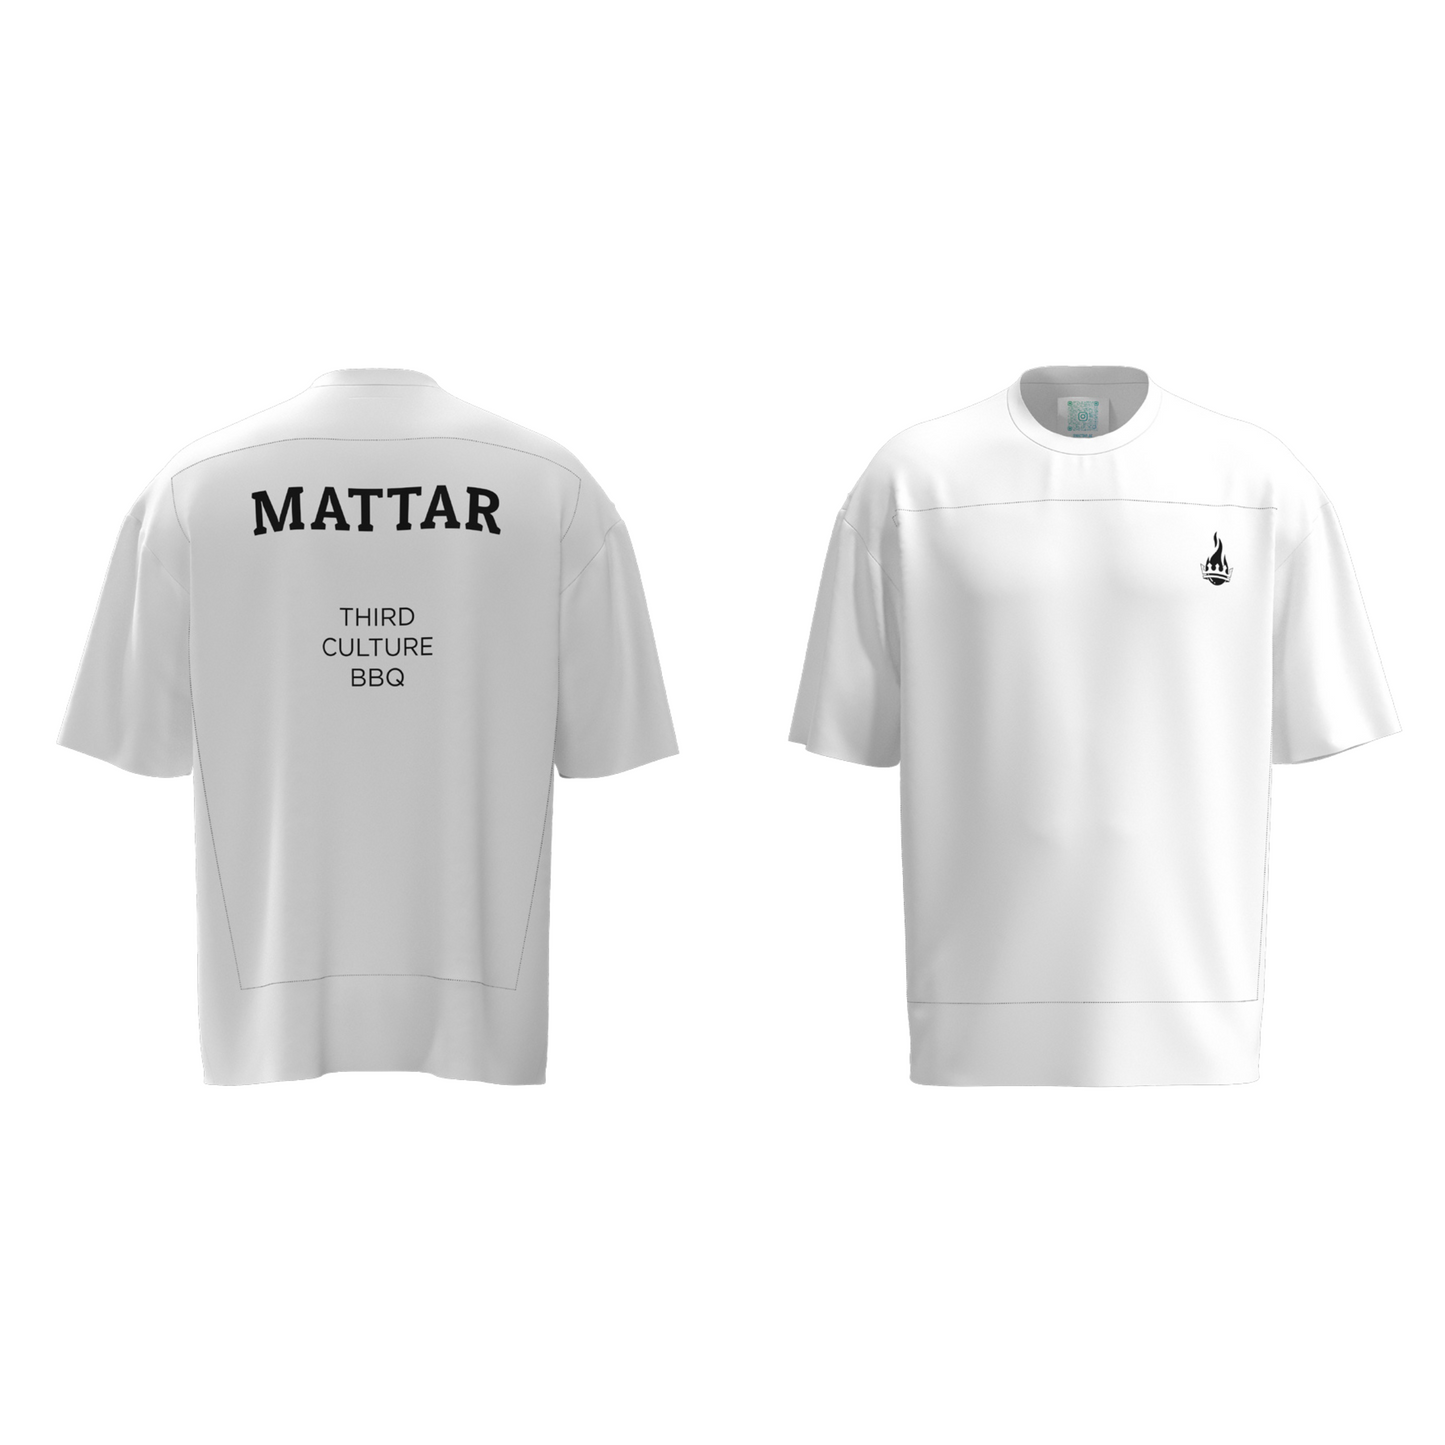 Pangaia x Mattar T-shirt